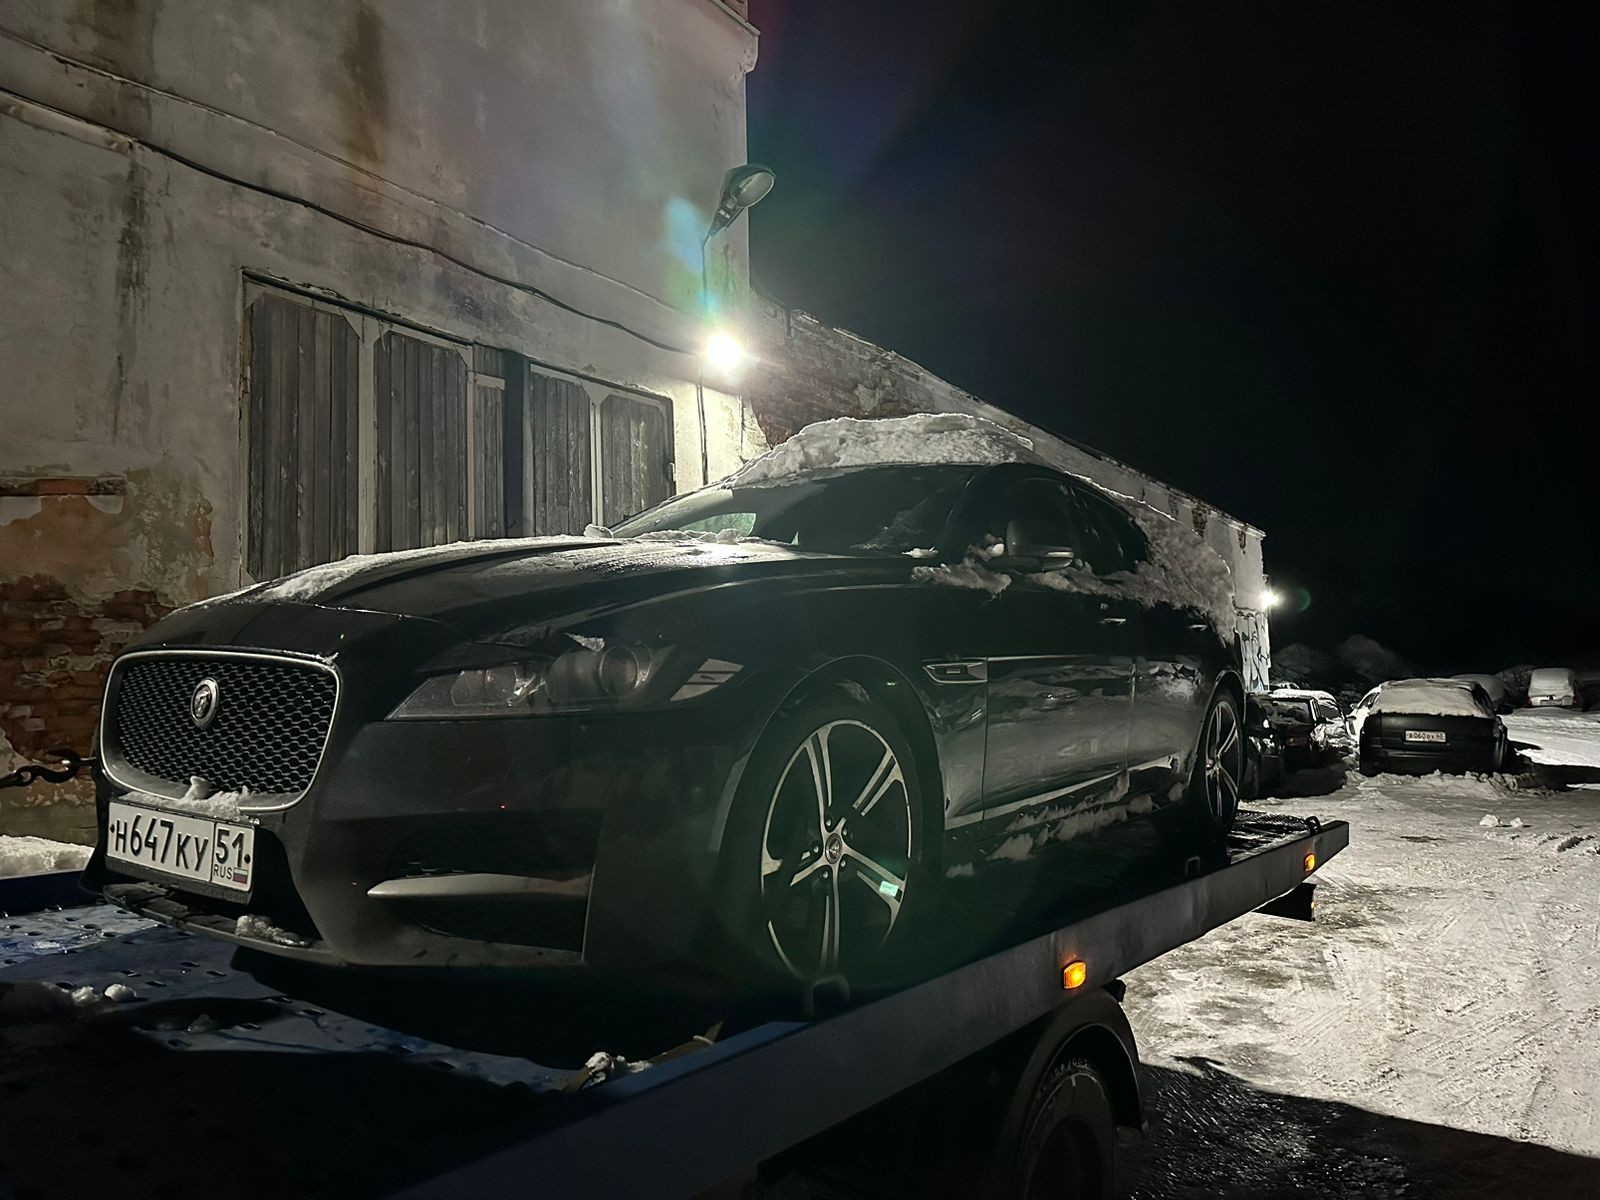 Легковой автомобиль Jaguar XF, 2017 г.в., VIN SAJBA4BX4JCY64154, цвет черный. Должник Сухарев С.Е. О